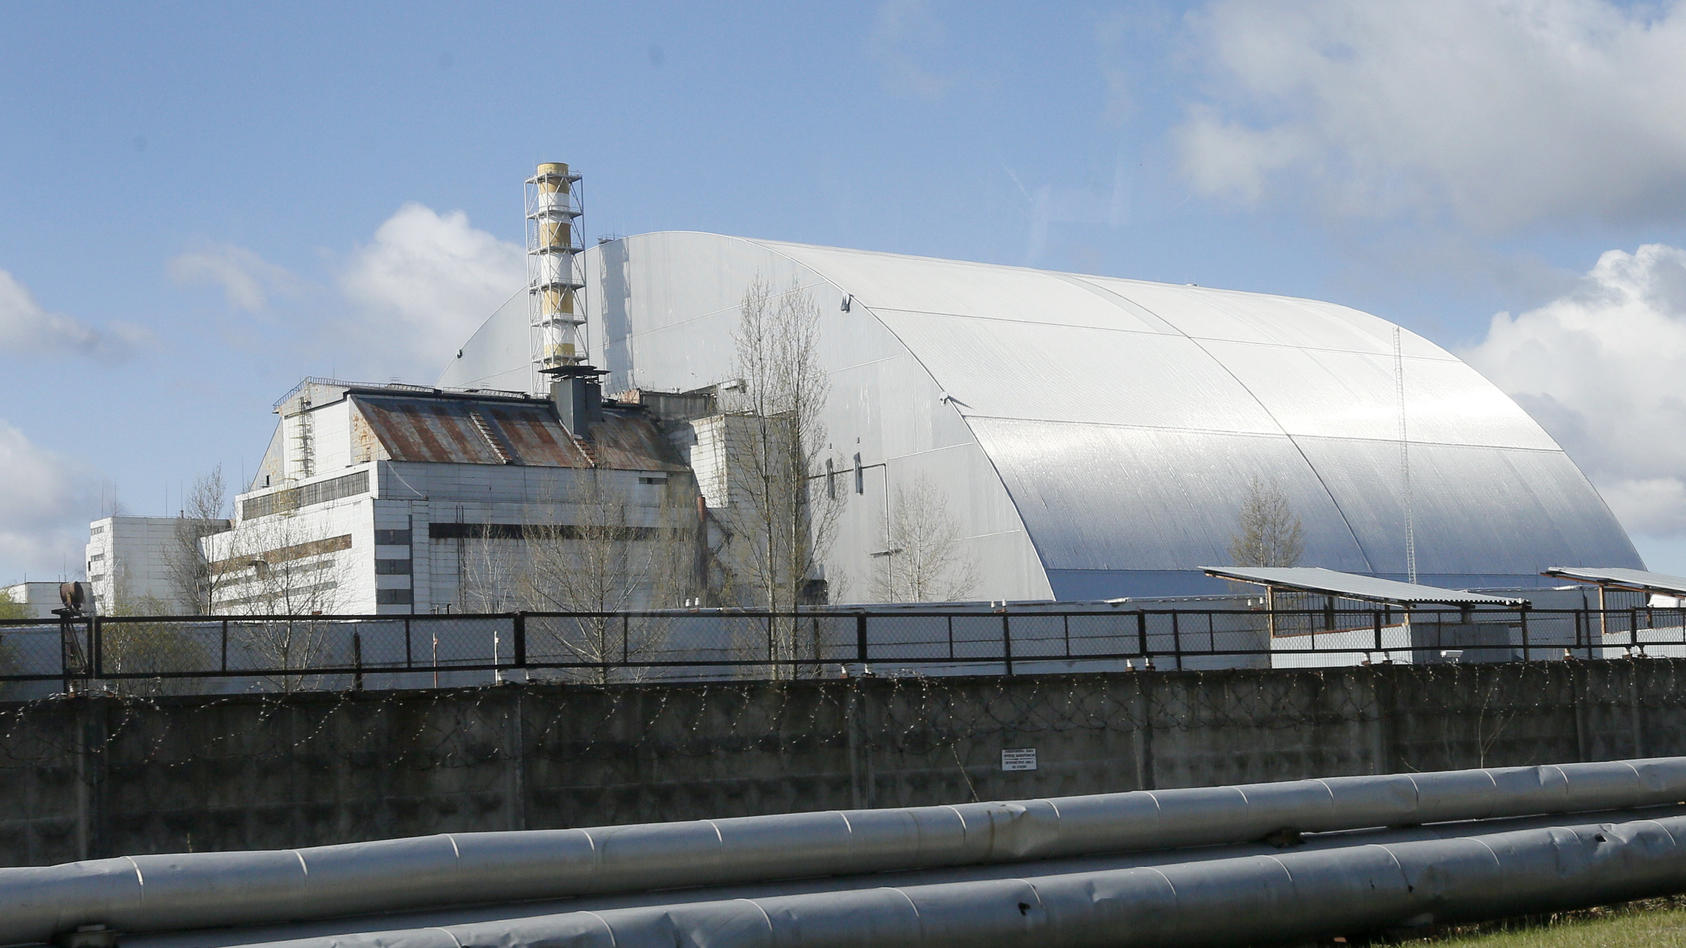 ARCHIV - 27.04.2021, Ukraine, Tschernobyl: Ein Schutzbau bedeckt den explodierten Reaktor im Kernkraftwerk Tschernobyl. Russische und ukrainische Truppen liefern sich nach Angaben des ukrainischen Präsidenten Wolodymyr Selenskyj am Donnerstag (24.02.